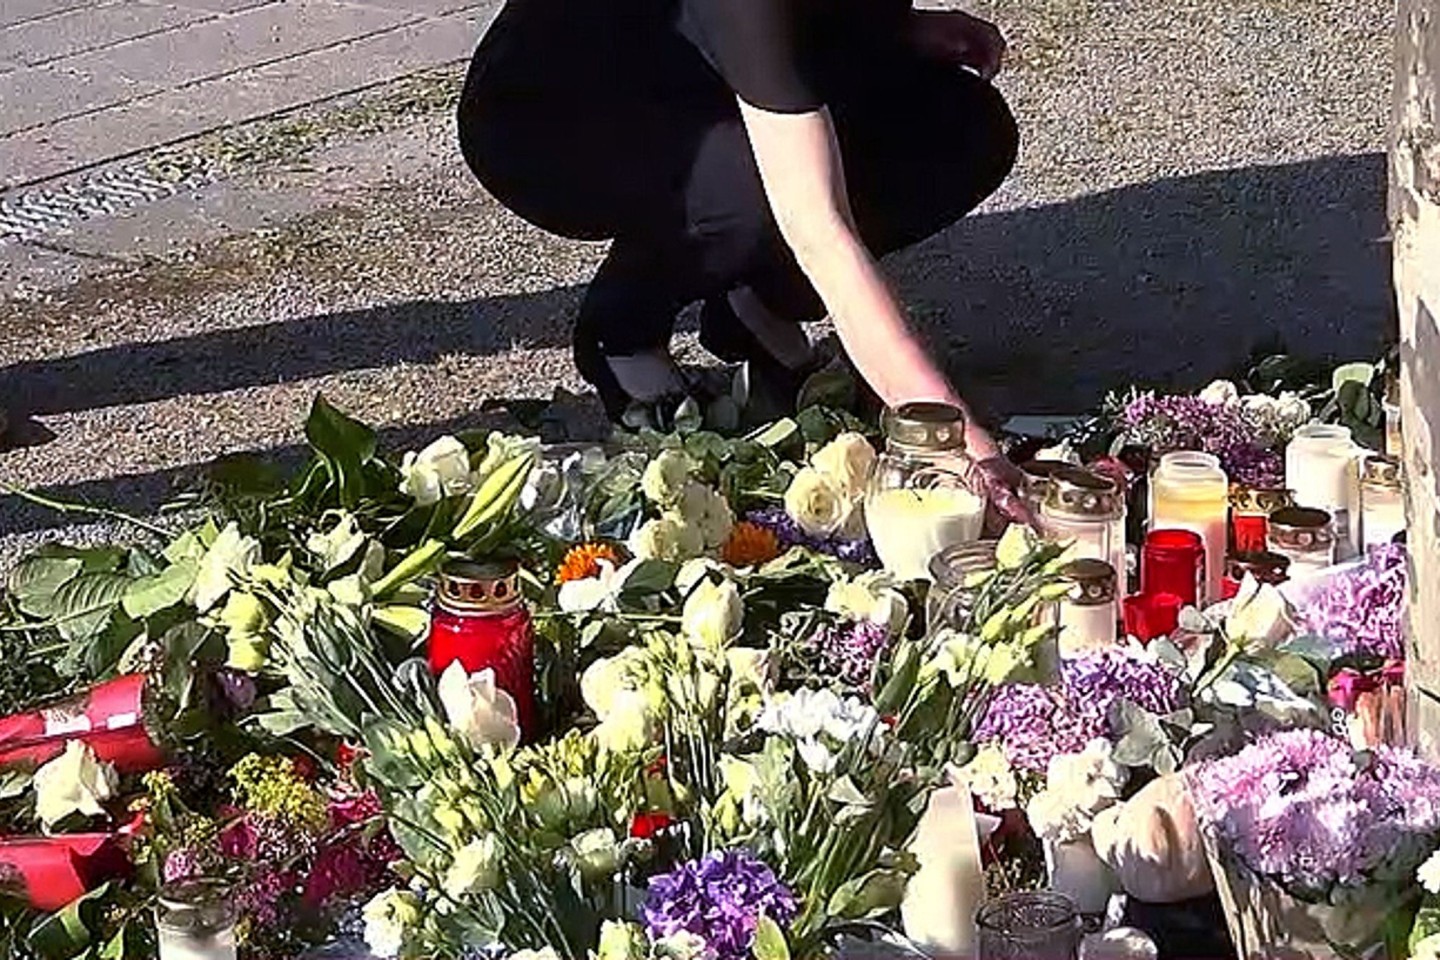 Menschen trauern nach dem tödlichen Angriff in Bad Oeynhausen.